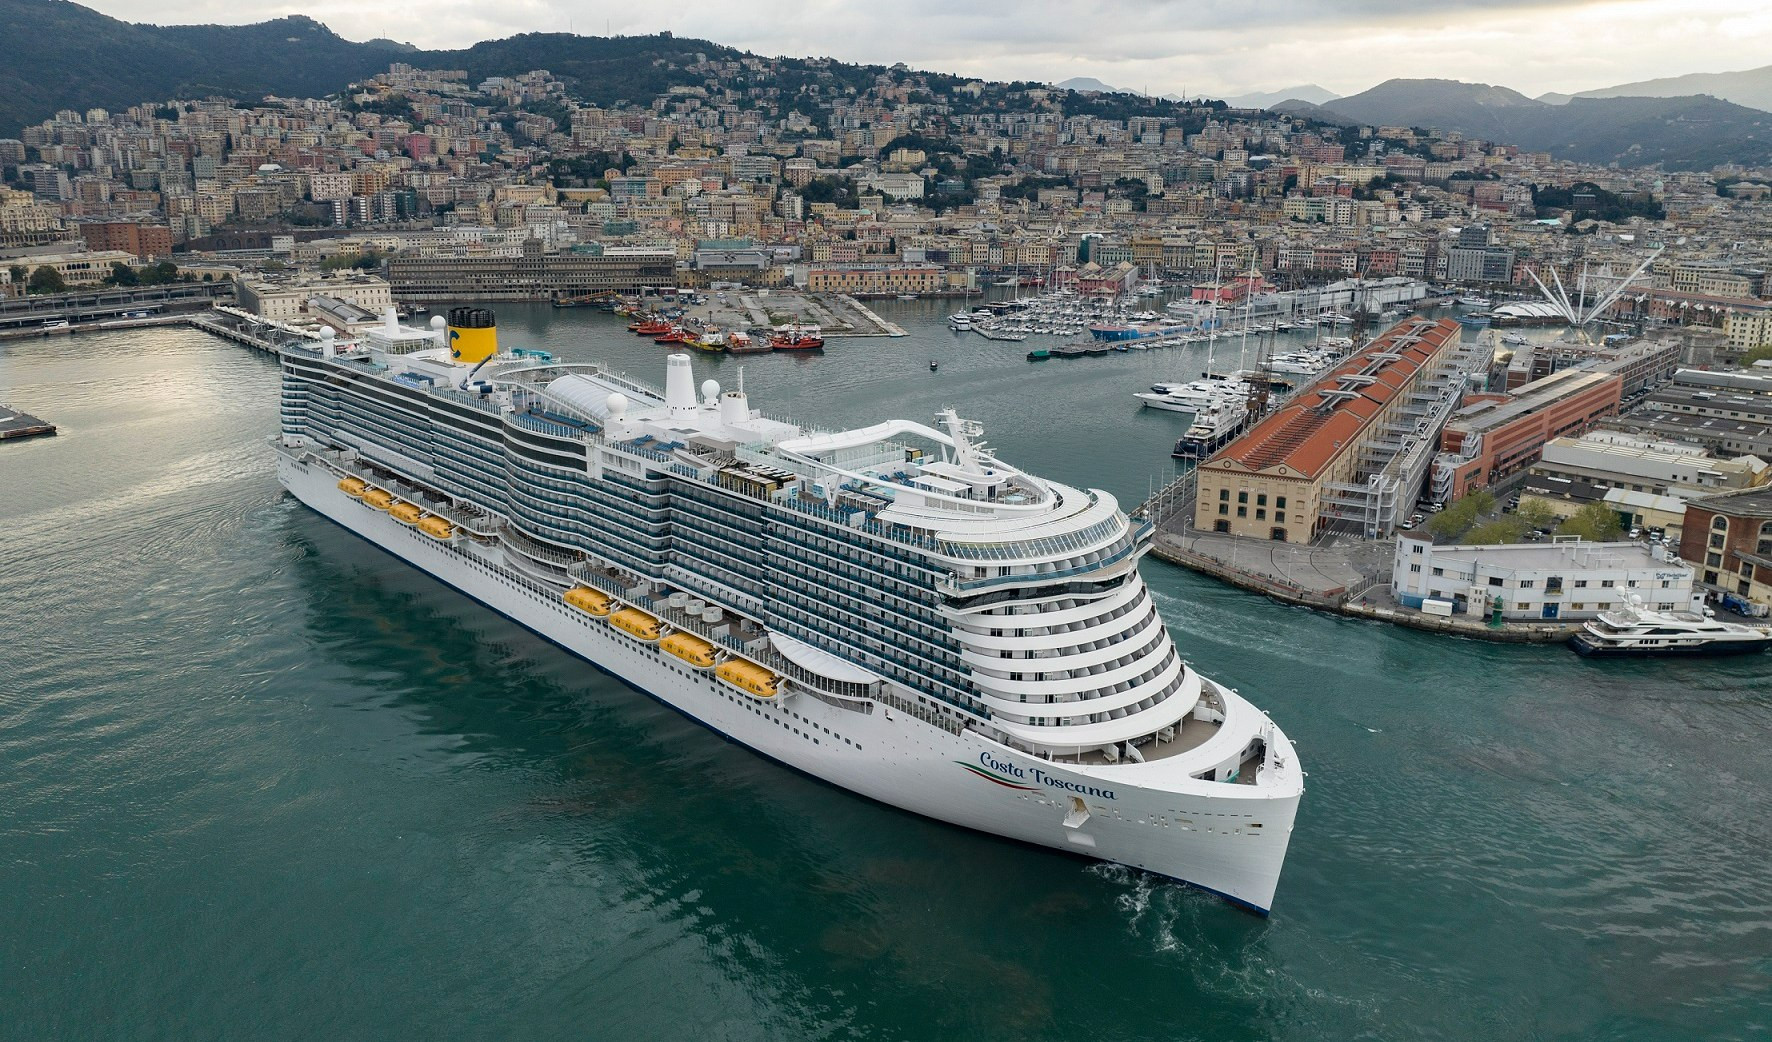 Costa Toscana, l'ammiraglia della flotta, debutta a Genova